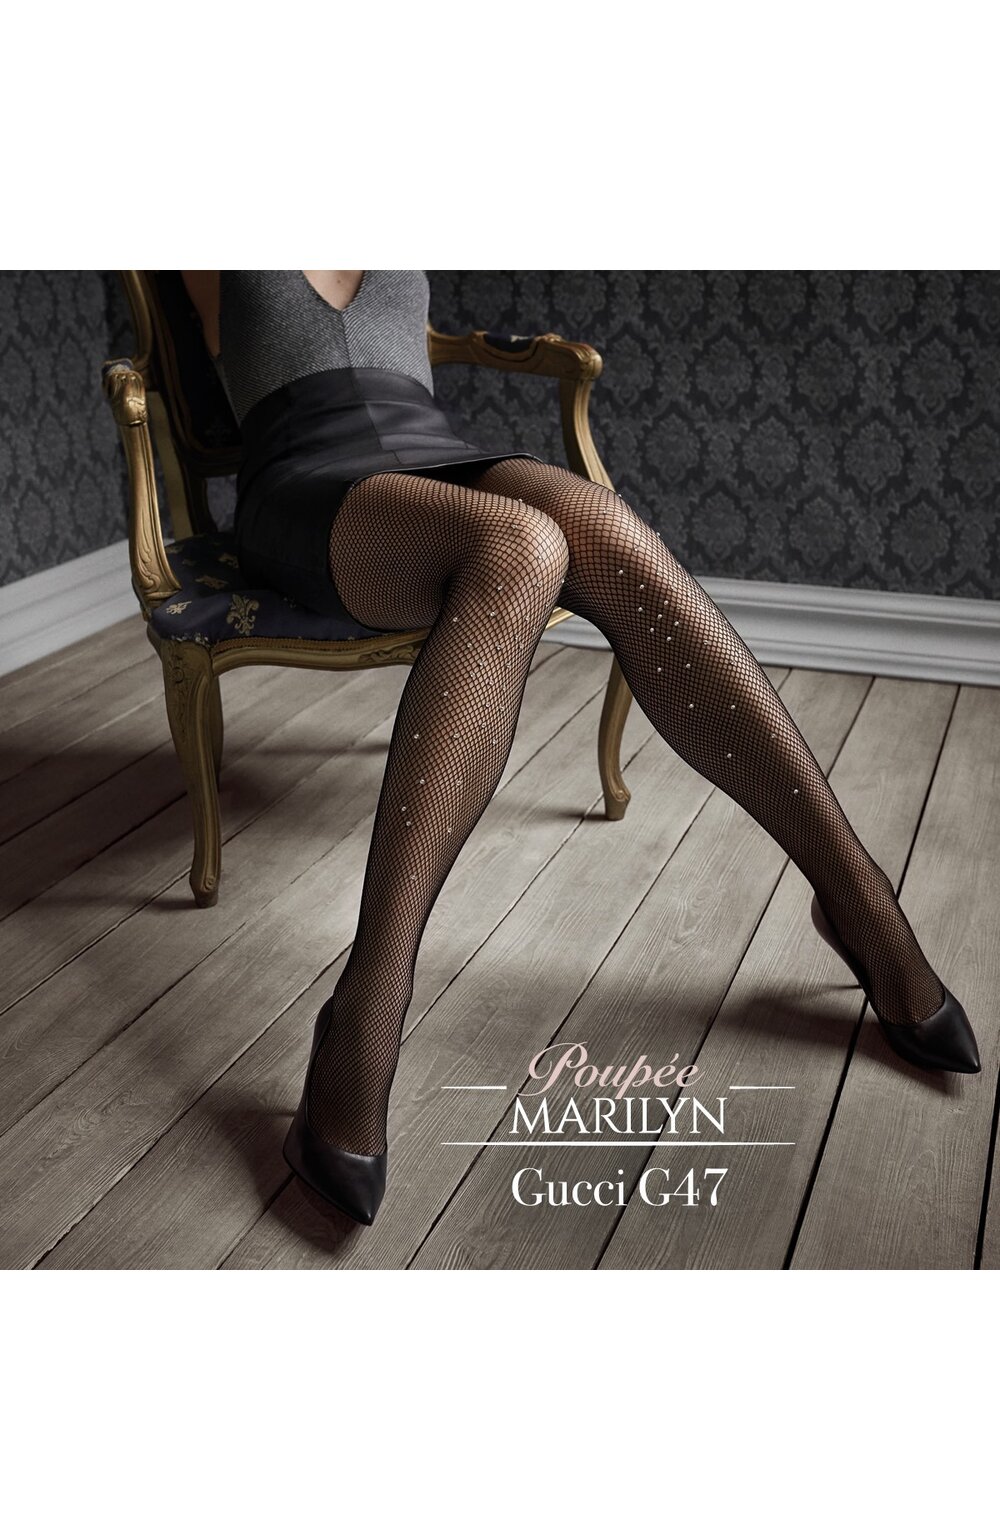 Ciorapi plasa cu cristale, colectia de lux Patrizia GUCCI for Marilyn G47 carouri.ro imagine noua 2022